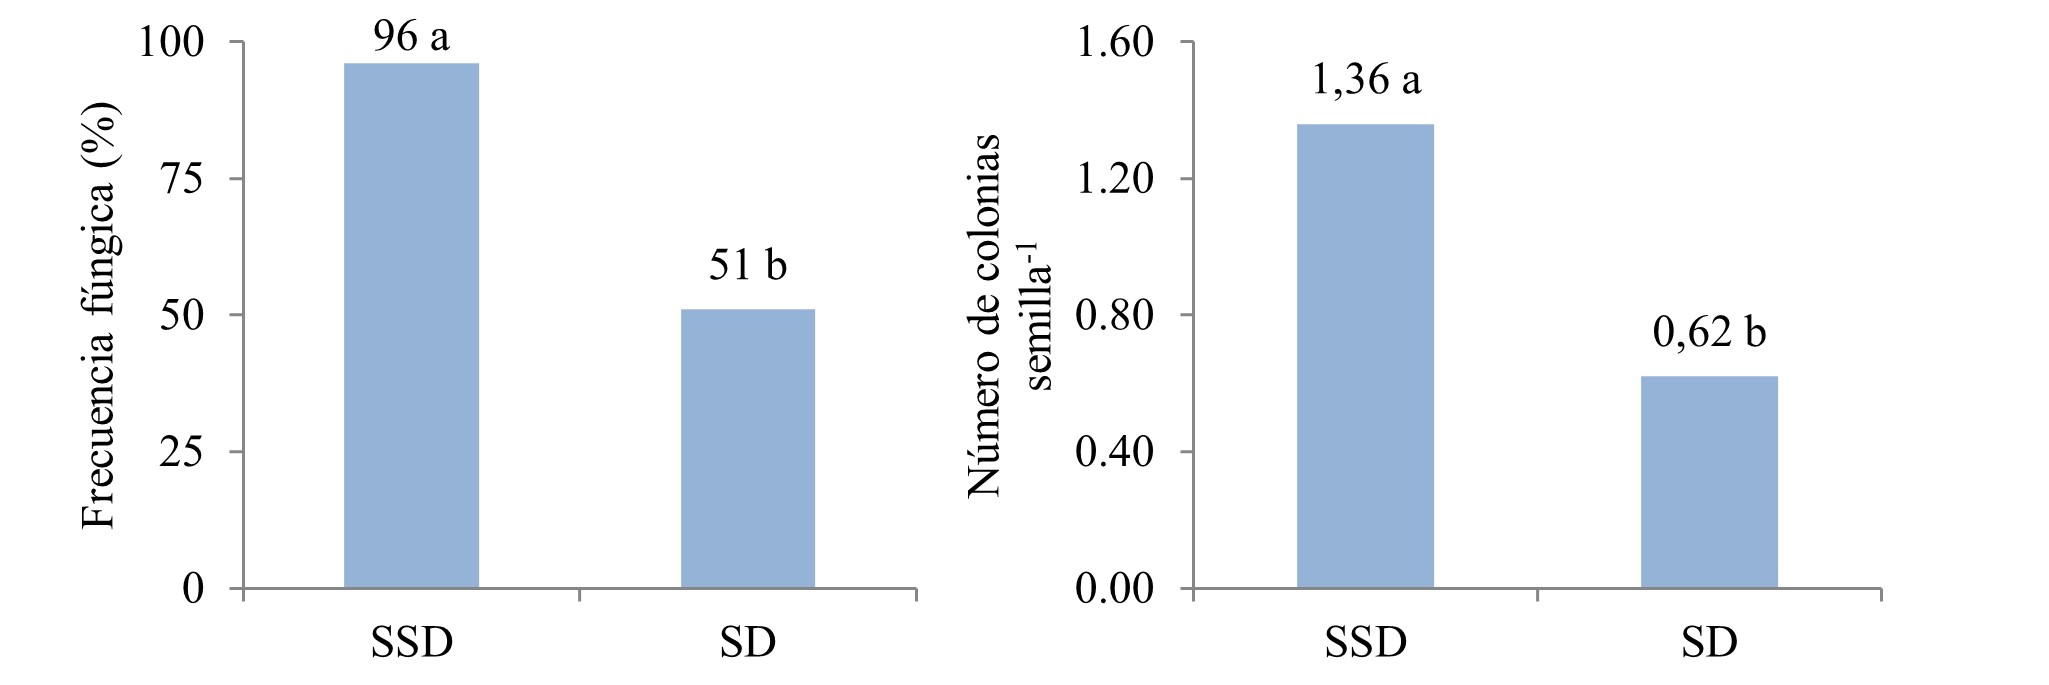 Frecuencia
fúngica (%) y número de colonias.semilla-1
en semillas de moringa, sin desinfectar (SSD) y desinfectadas (SD).